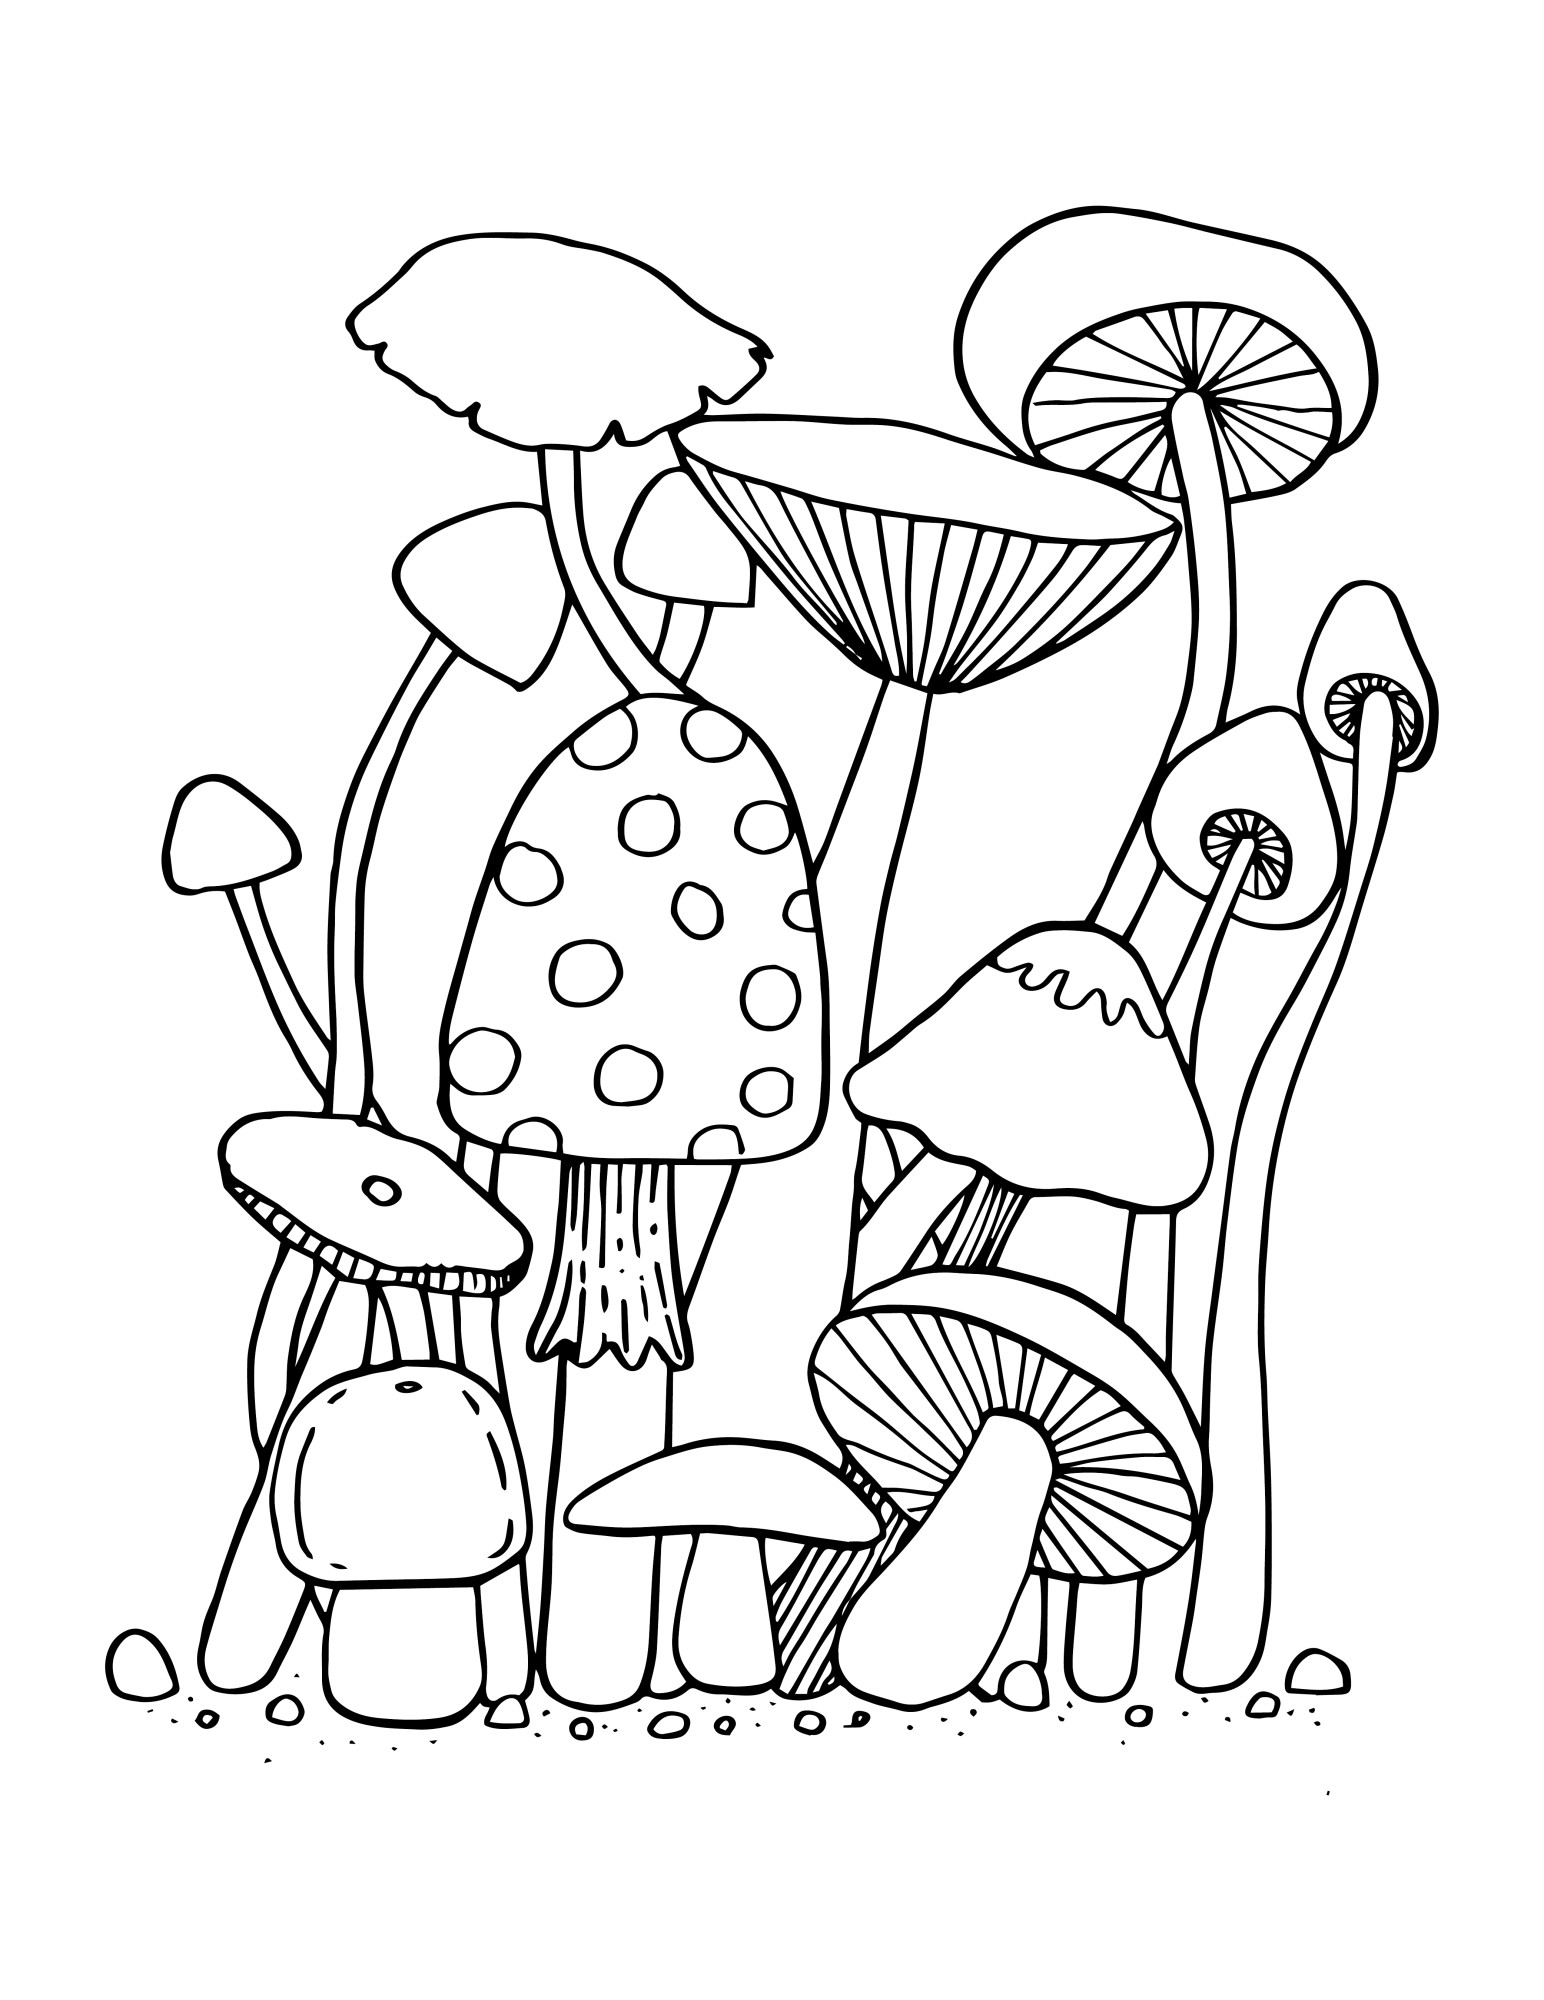 Раскраска для детей: разные грибы